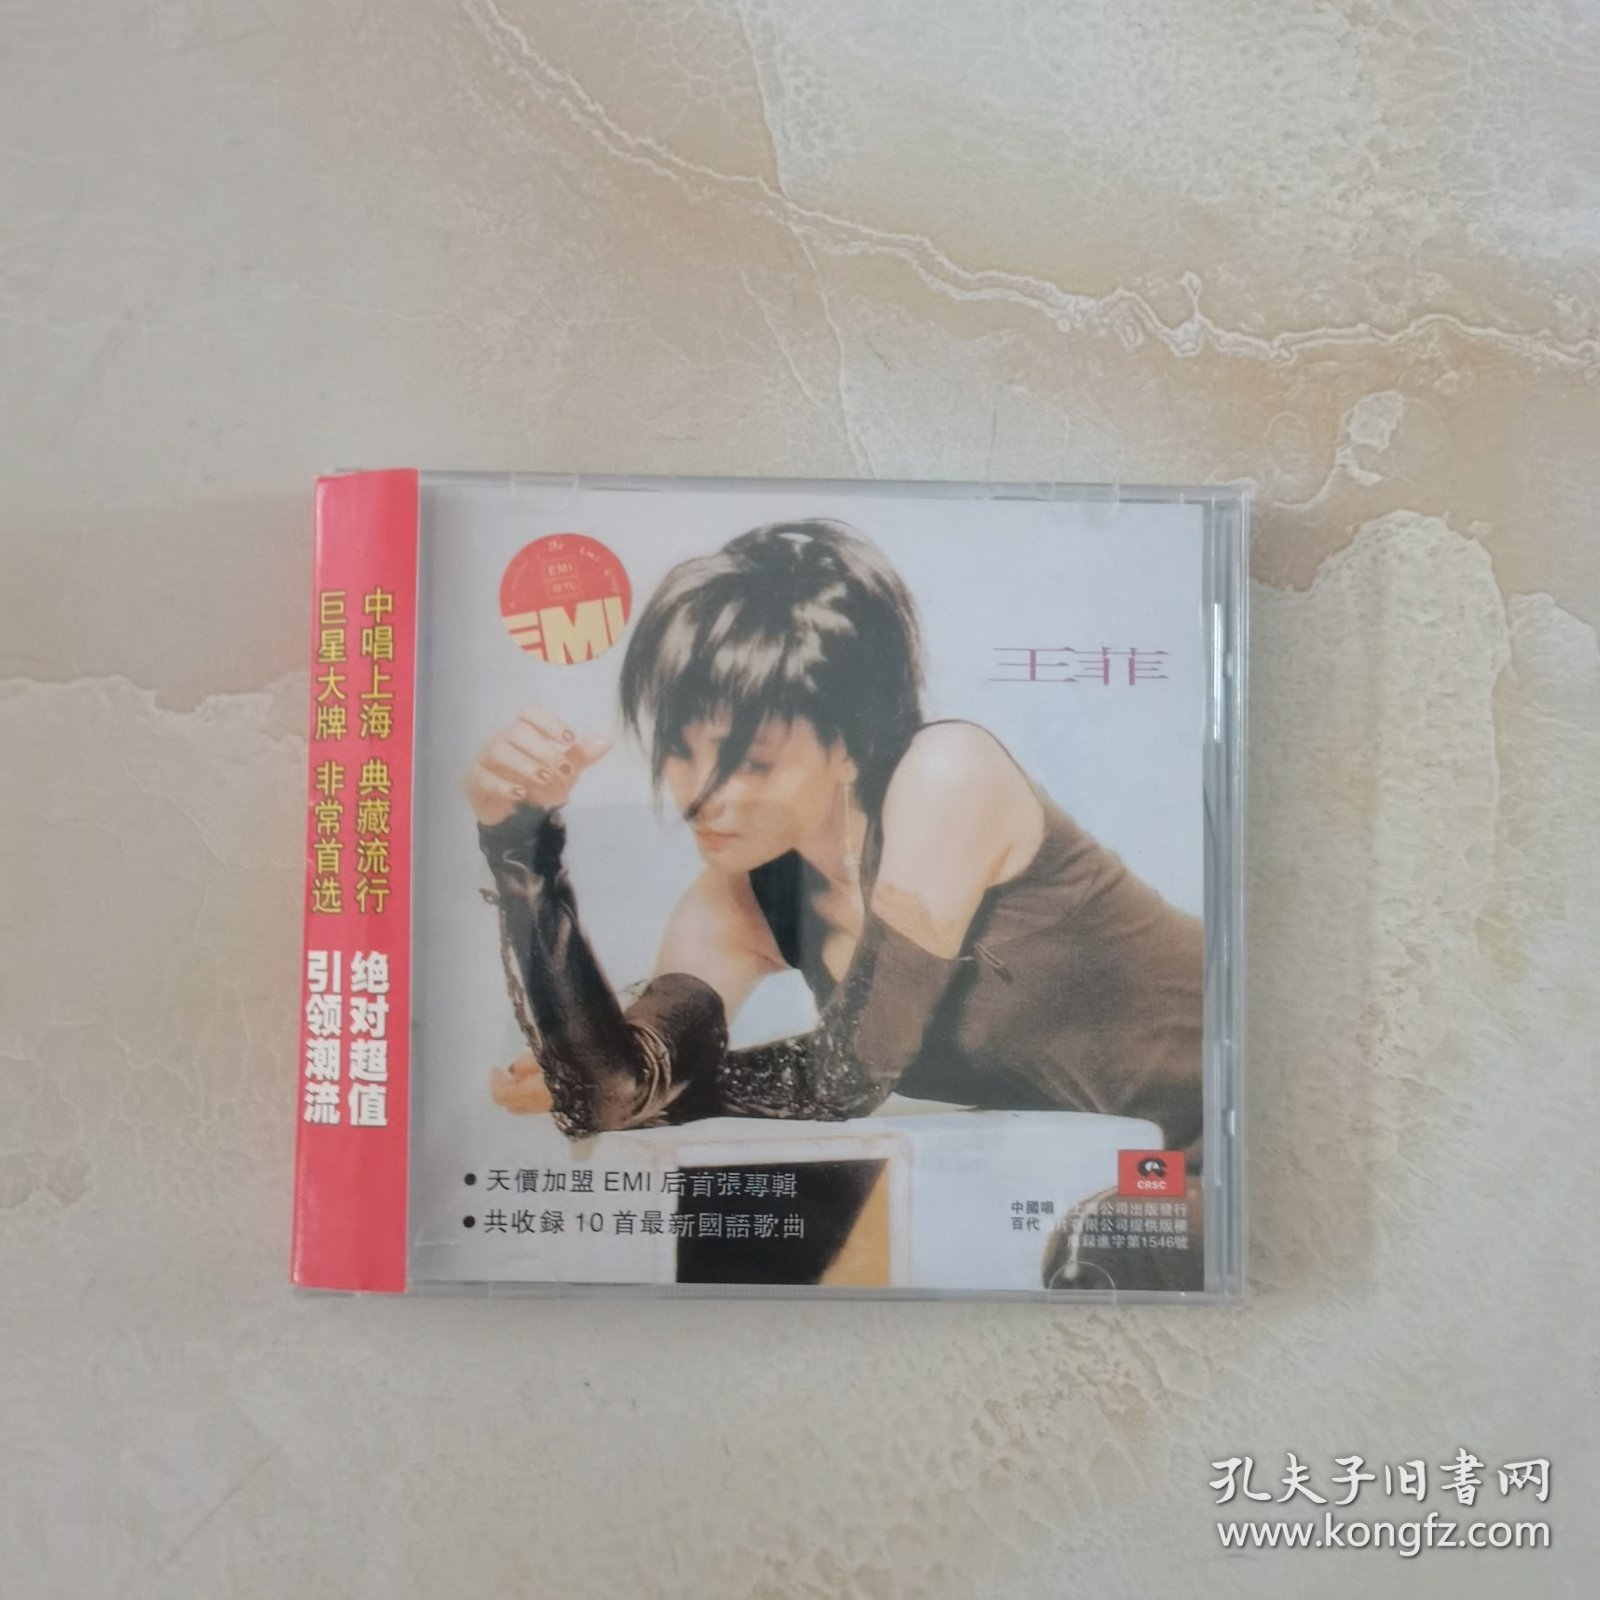 王菲你快乐所以我快乐，中国唱片上海公司正版发行九五新CD，盘完好如初播放顺畅歌词页崭新，包邮！偏远地区新疆西藏内蒙除外，音像制品发出不更换！80元。